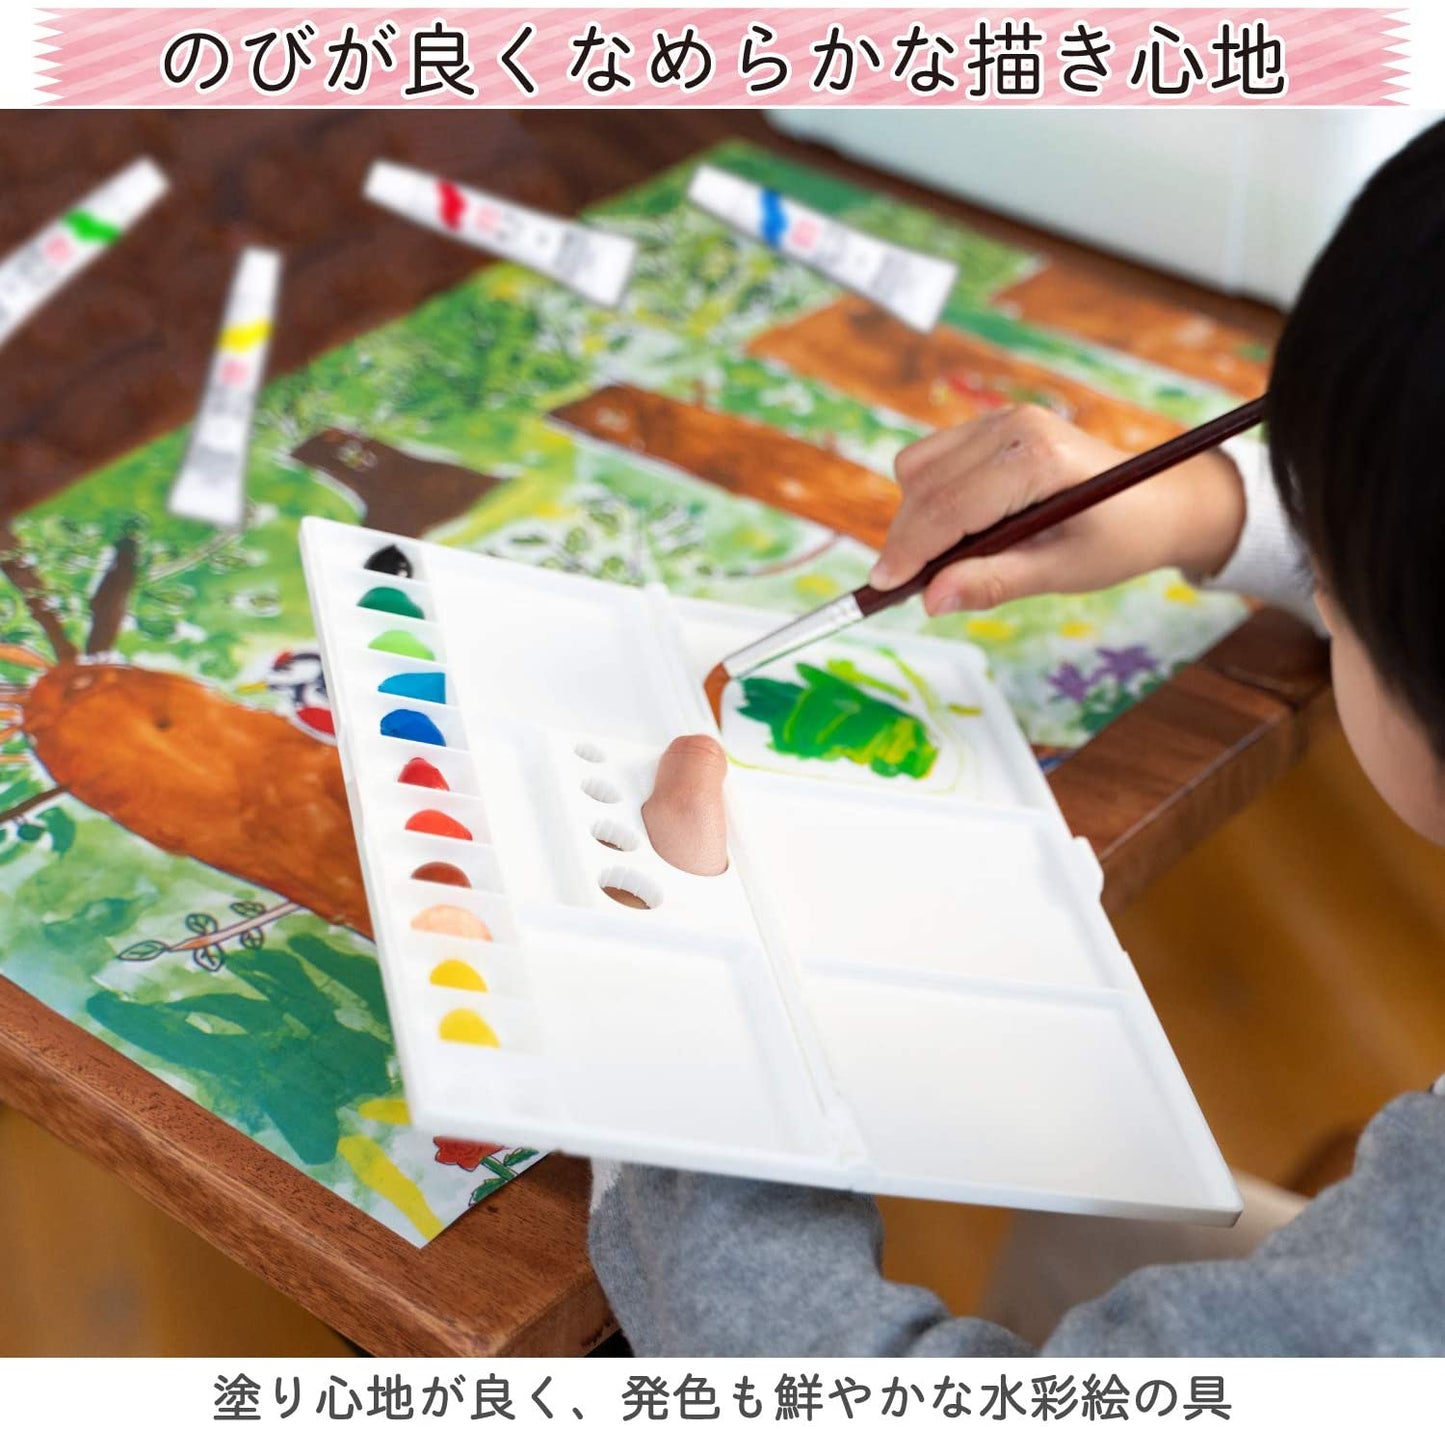 SAKURA Mat Watercolor 12 Colors (Made in Japan)